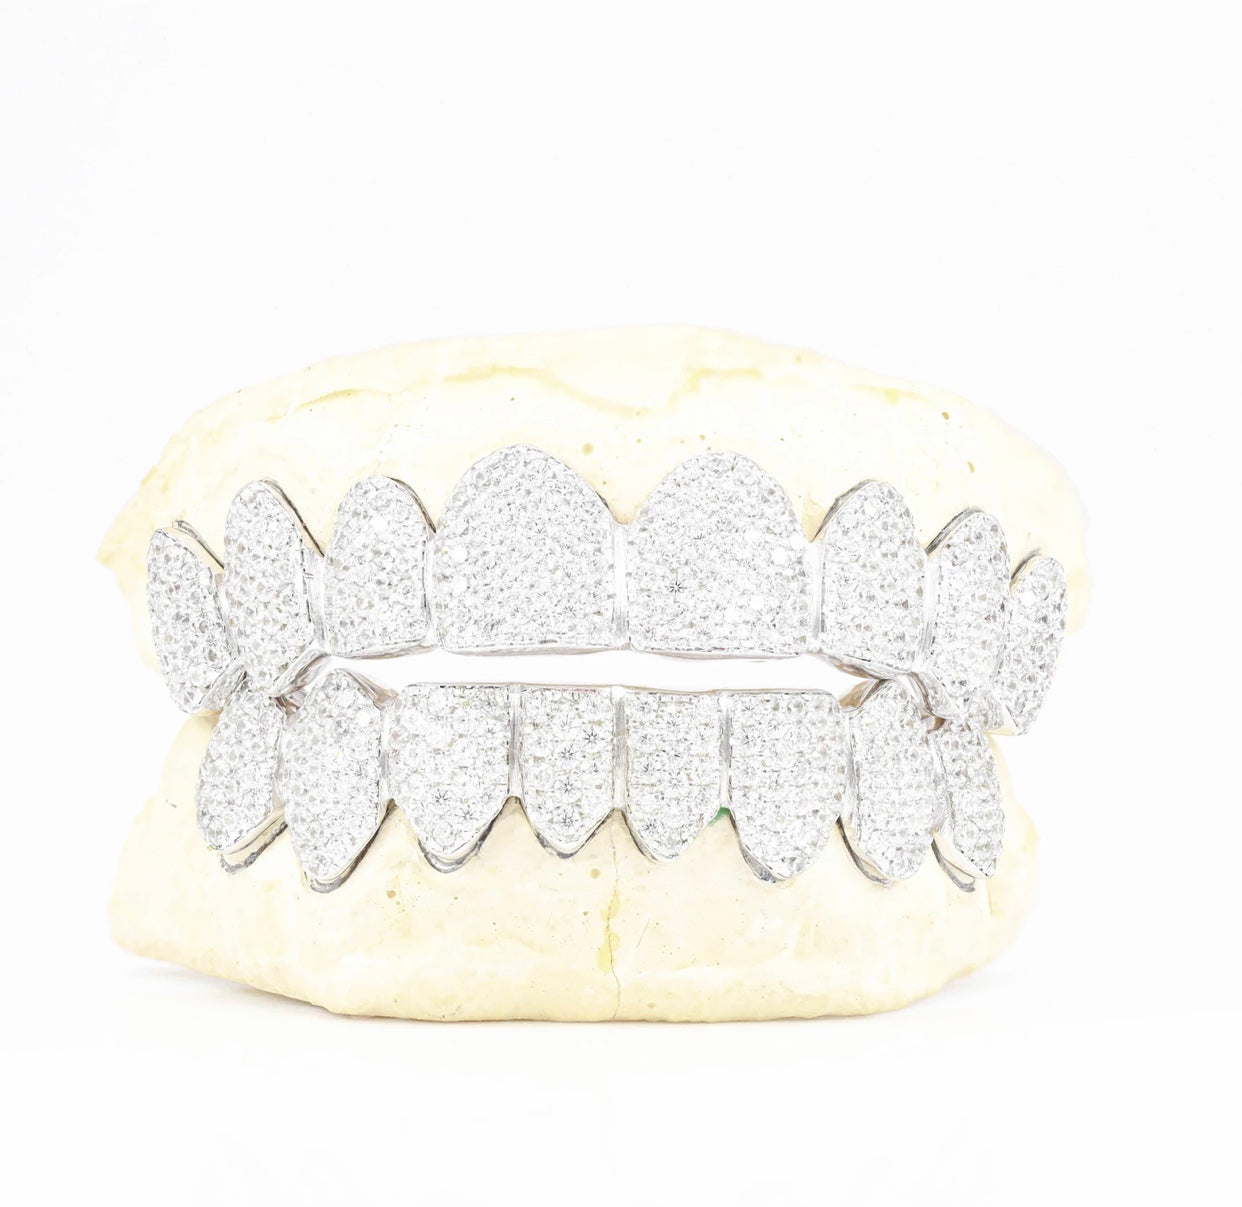 credit Te voet Belastingbetaler VVS Diamond Teeth – So Gorgeous Jewelry